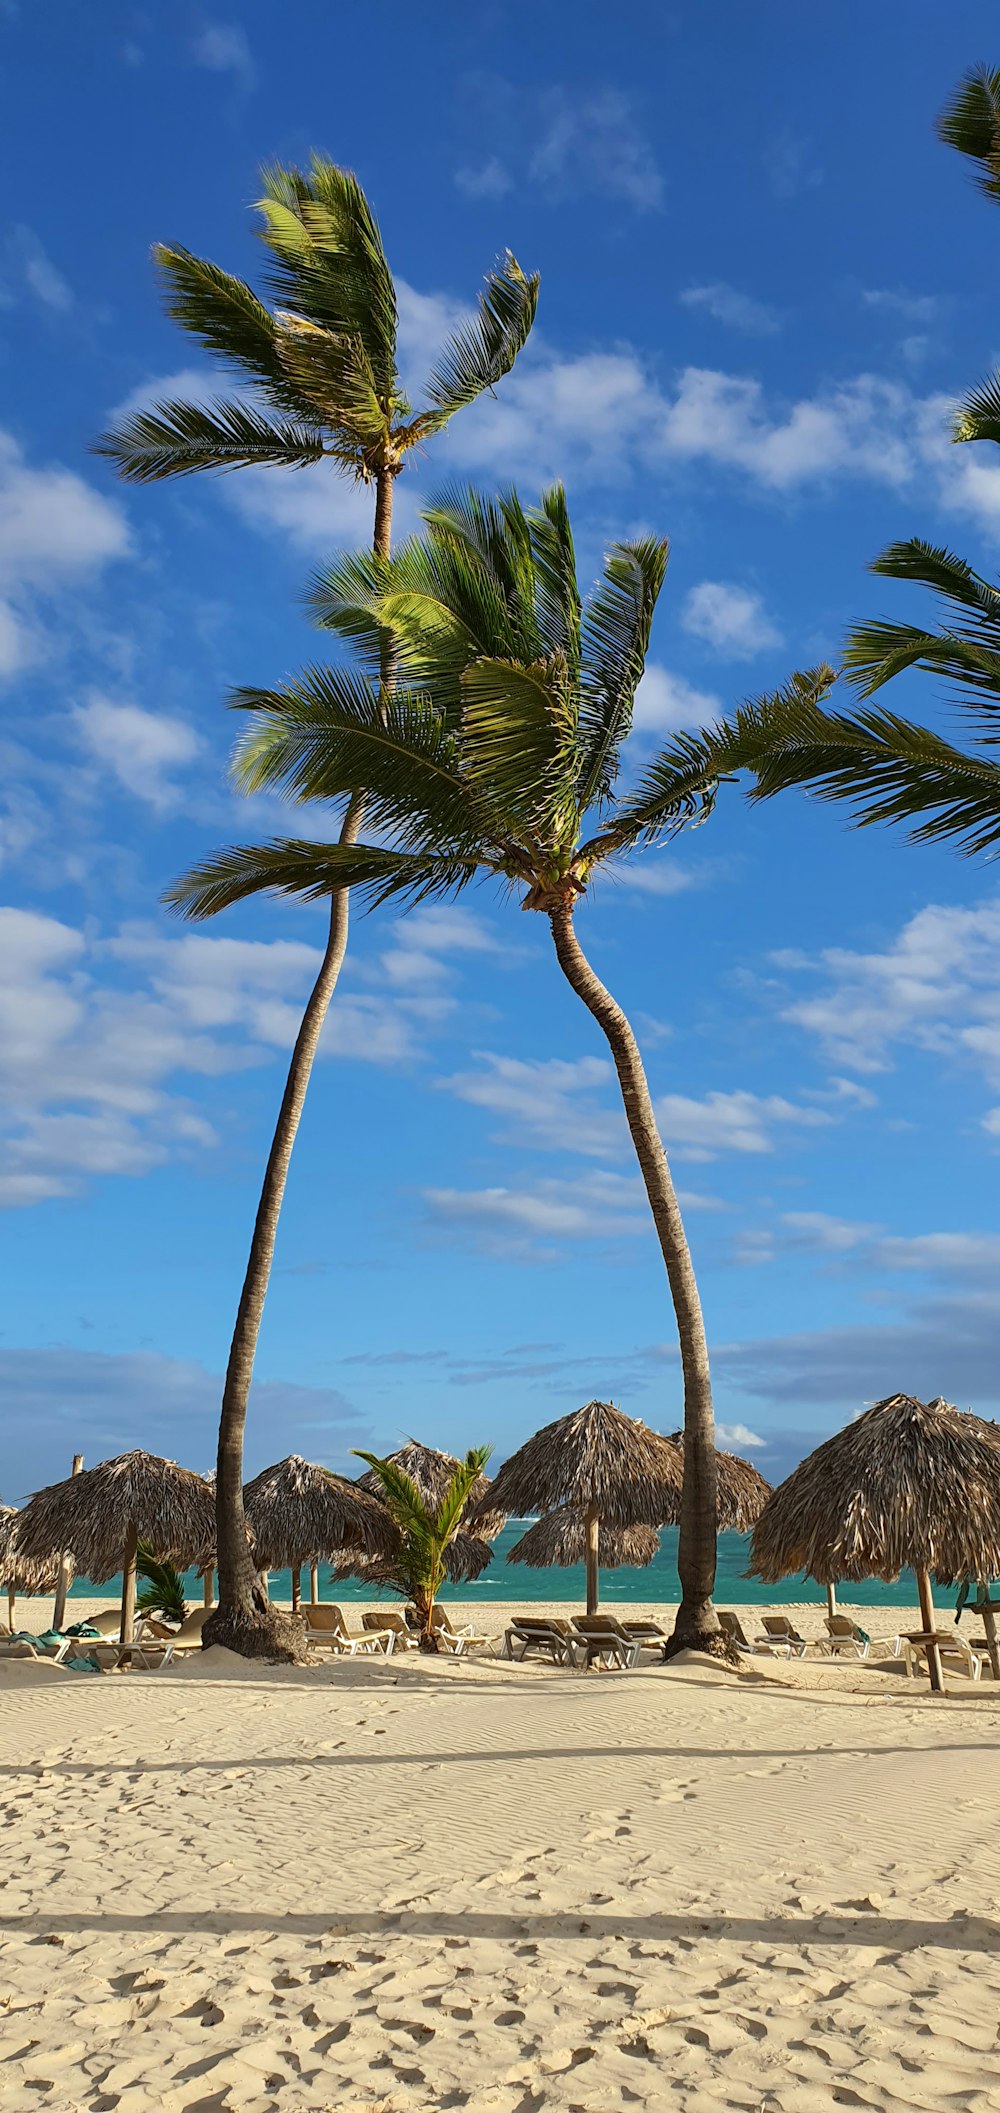 une plage de sable avec des palmiers et des parasols au toit de chaume